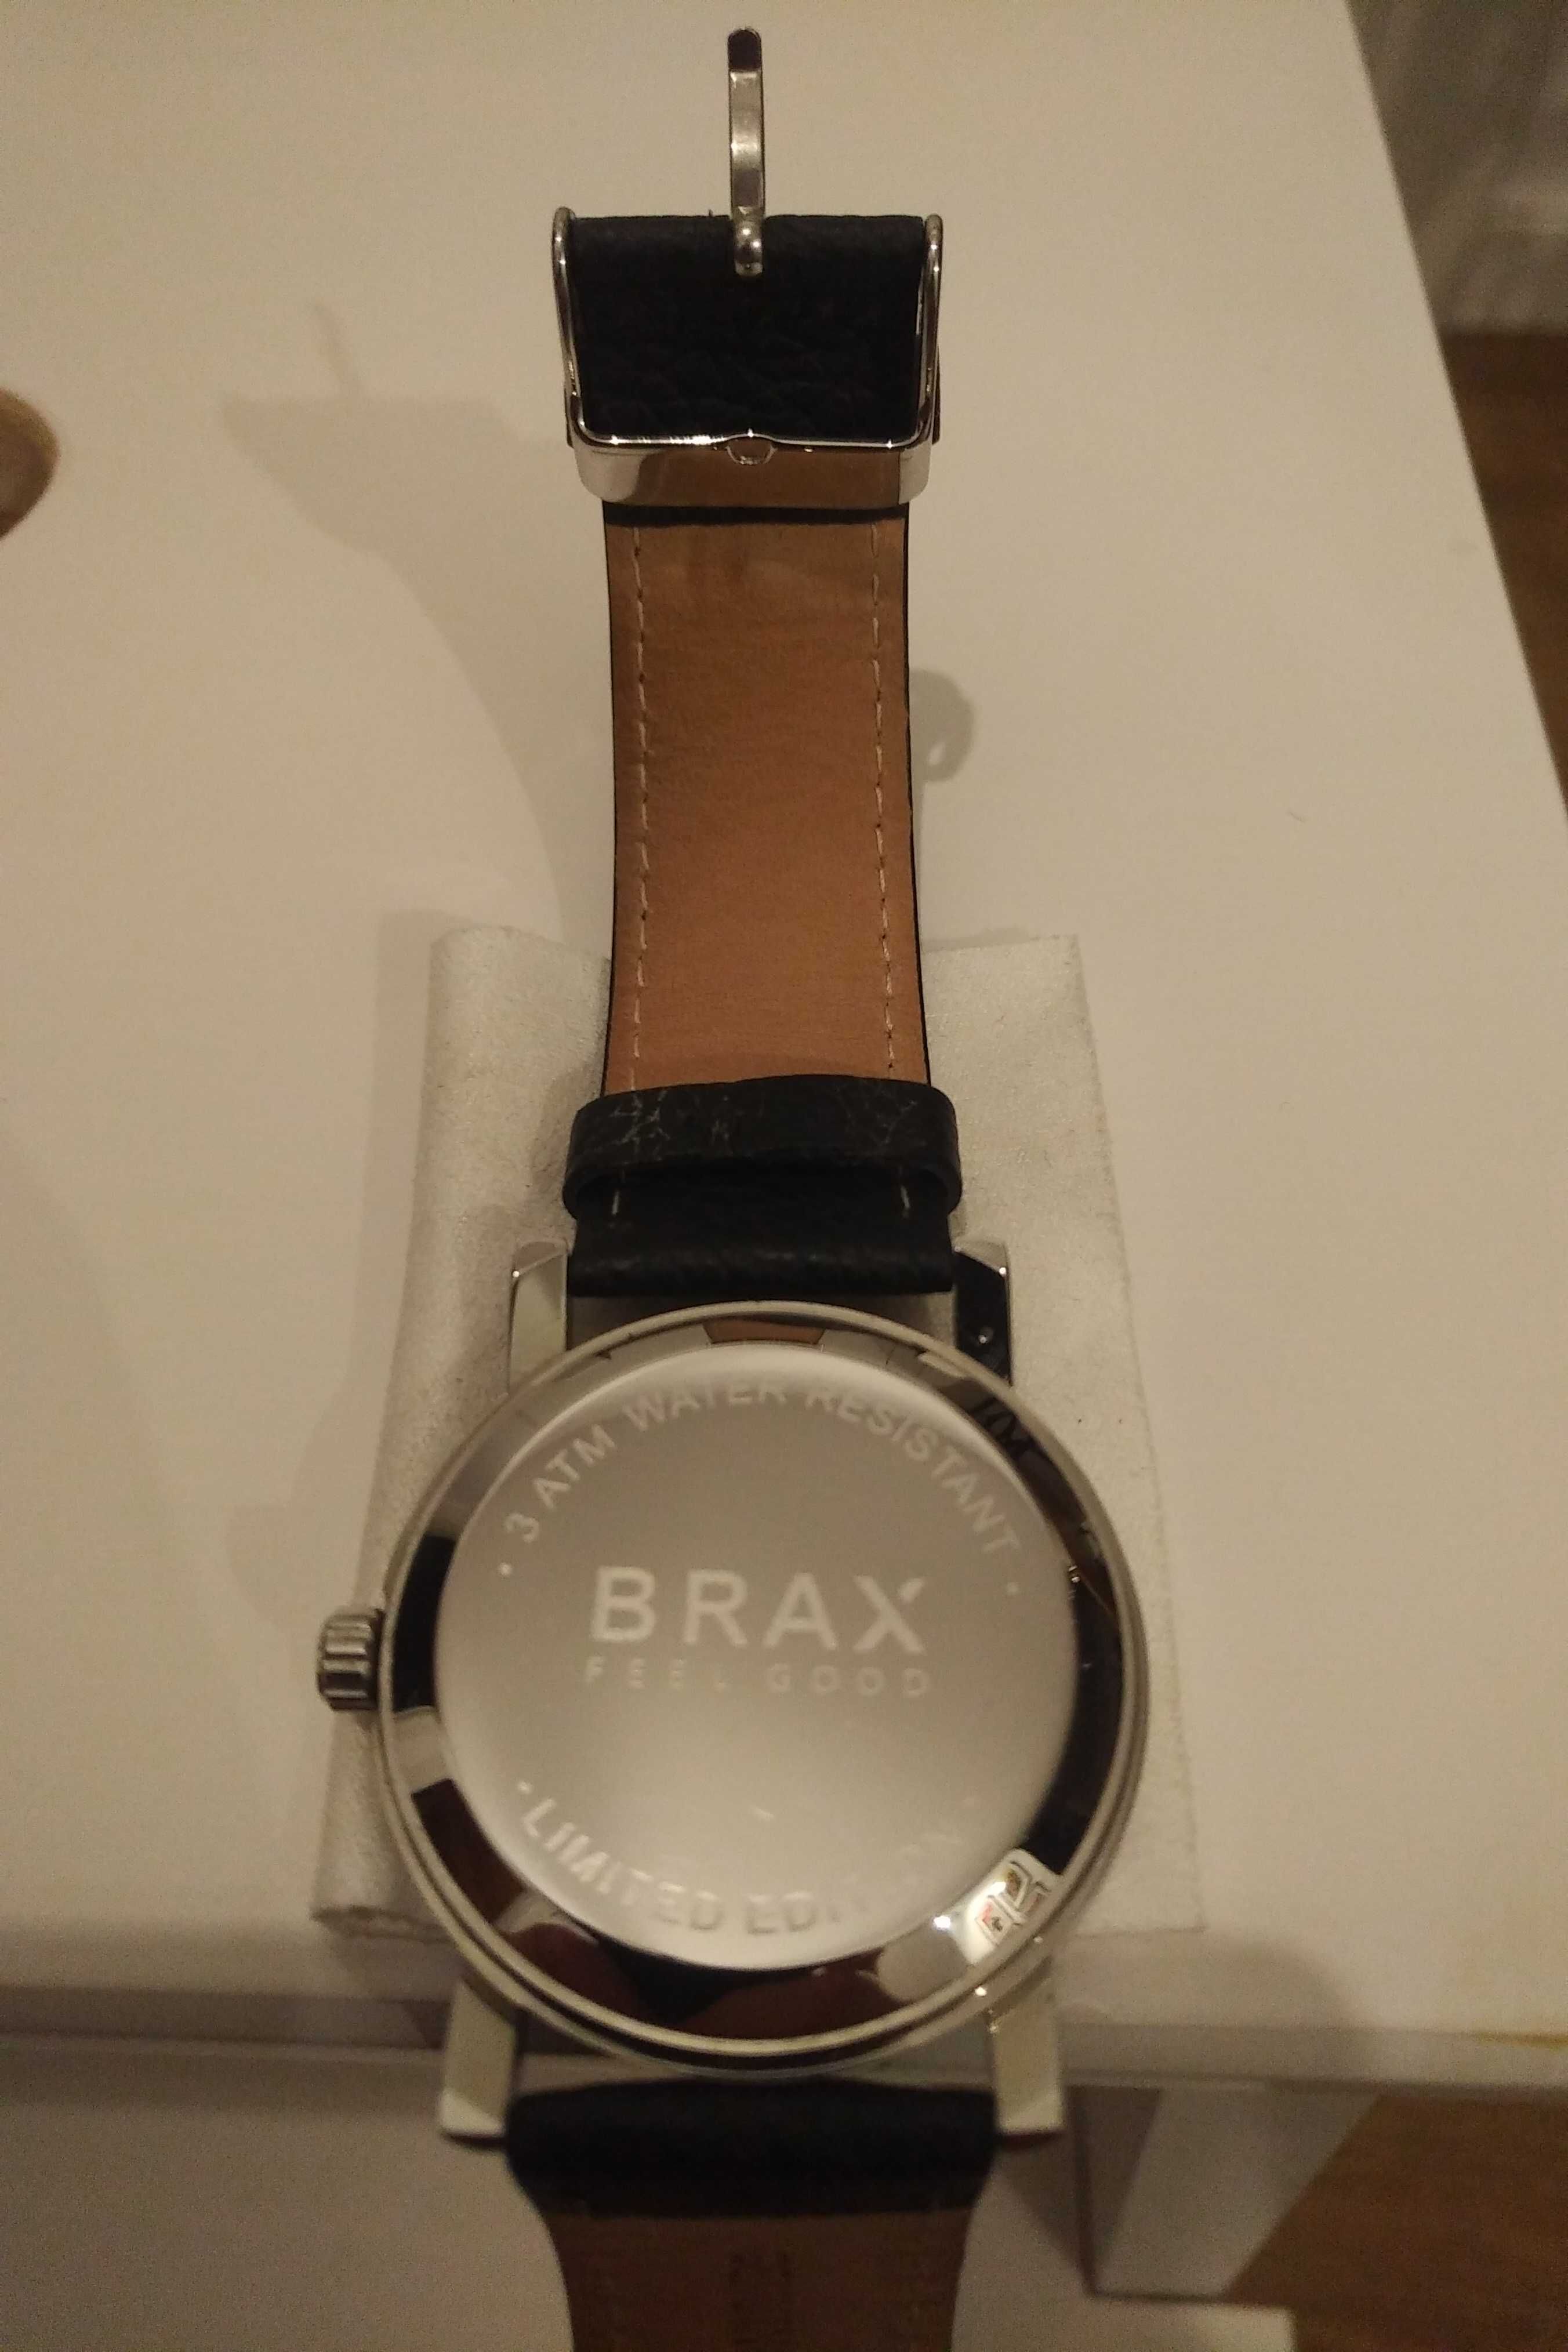 Zegarek BRAX 'FEEL GOOD' edycja limitowana NOWY